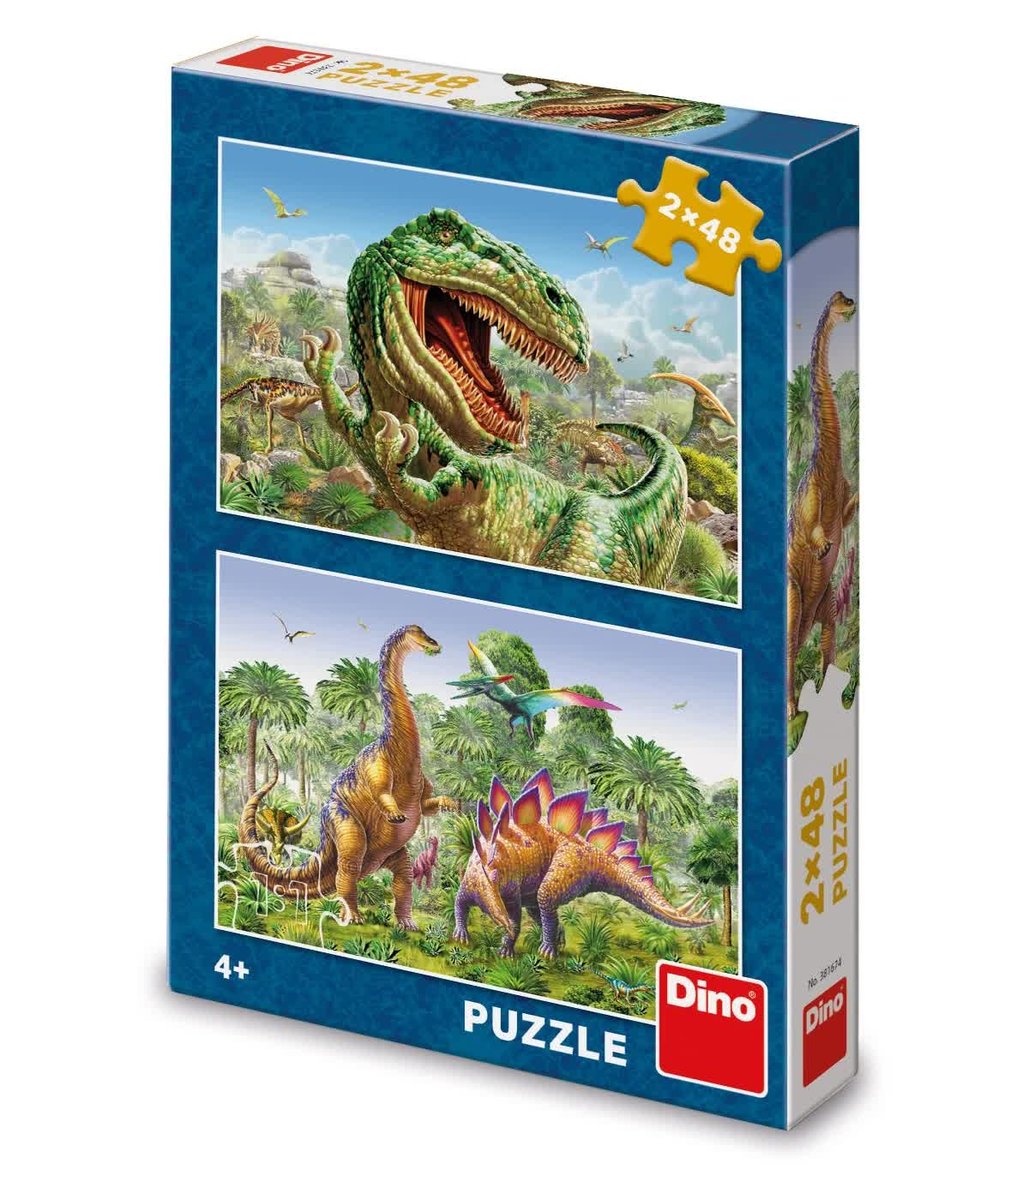 Zdjęcia - Puzzle i mozaiki Dino Puzzle 2 w 1 układanka z dinozaurami 2 x 48 elementów dla dzieci 4+ idealn 